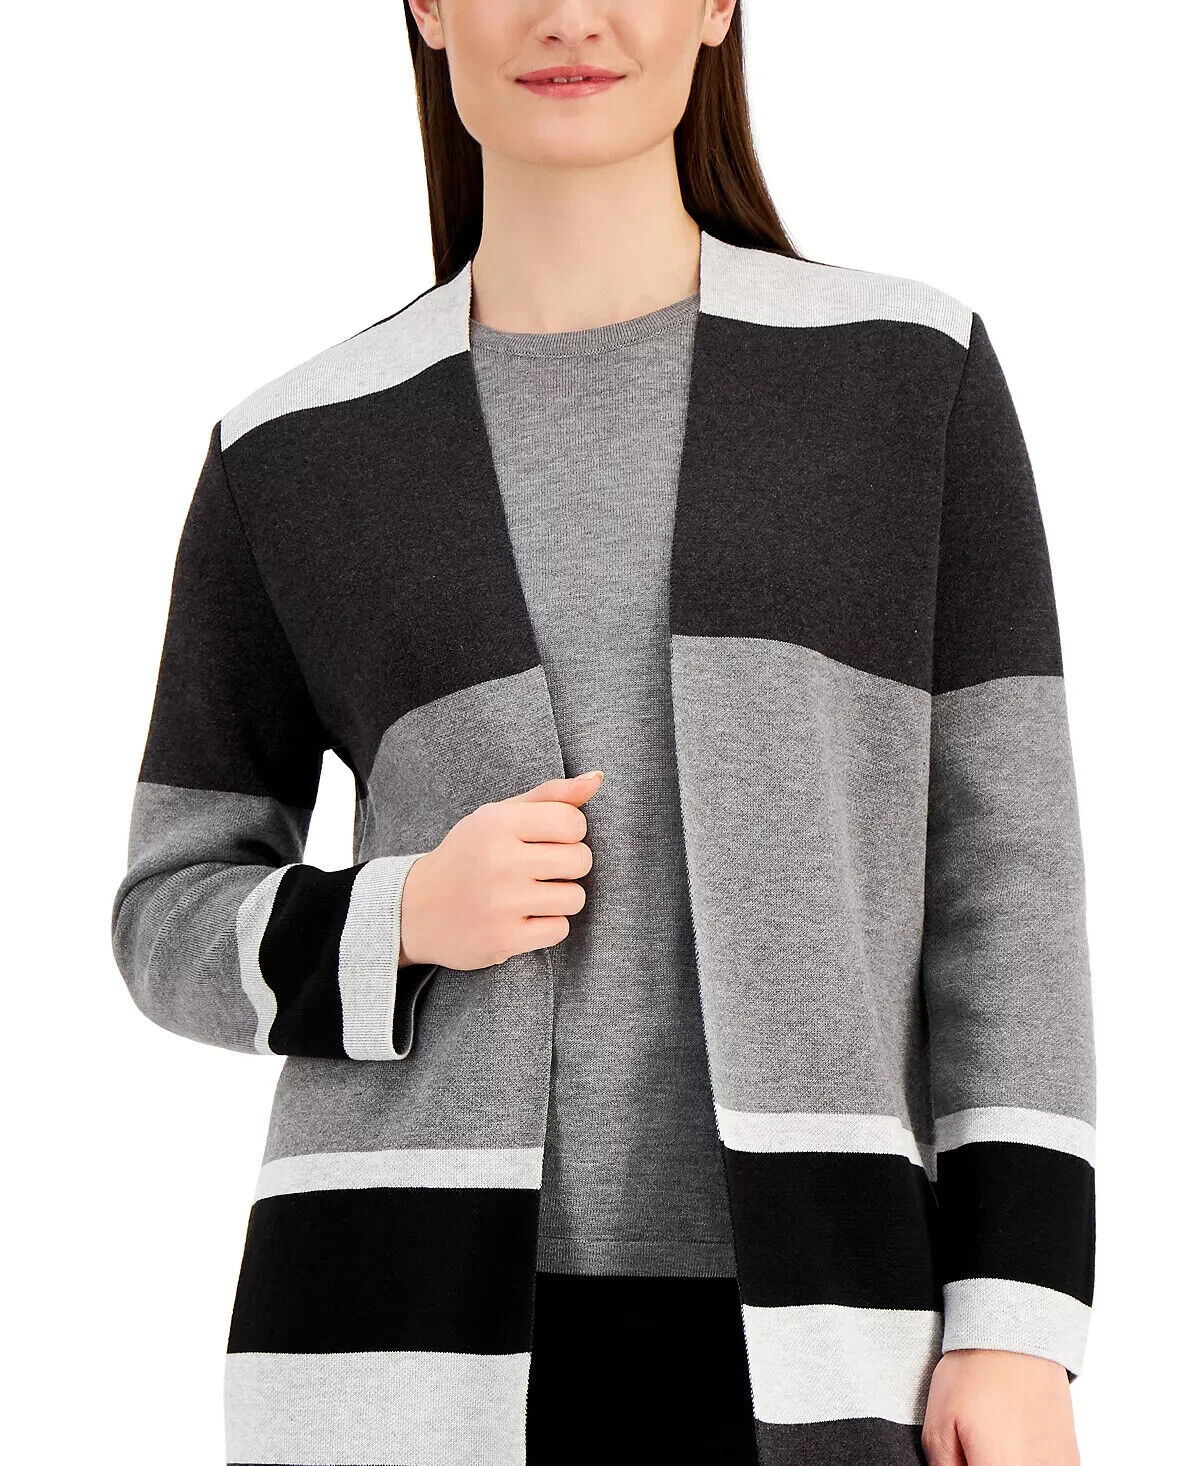 Kasper Linear Sweater Topper MSRP $ 99 Tamaño XS # 14B 1122 NUEVO